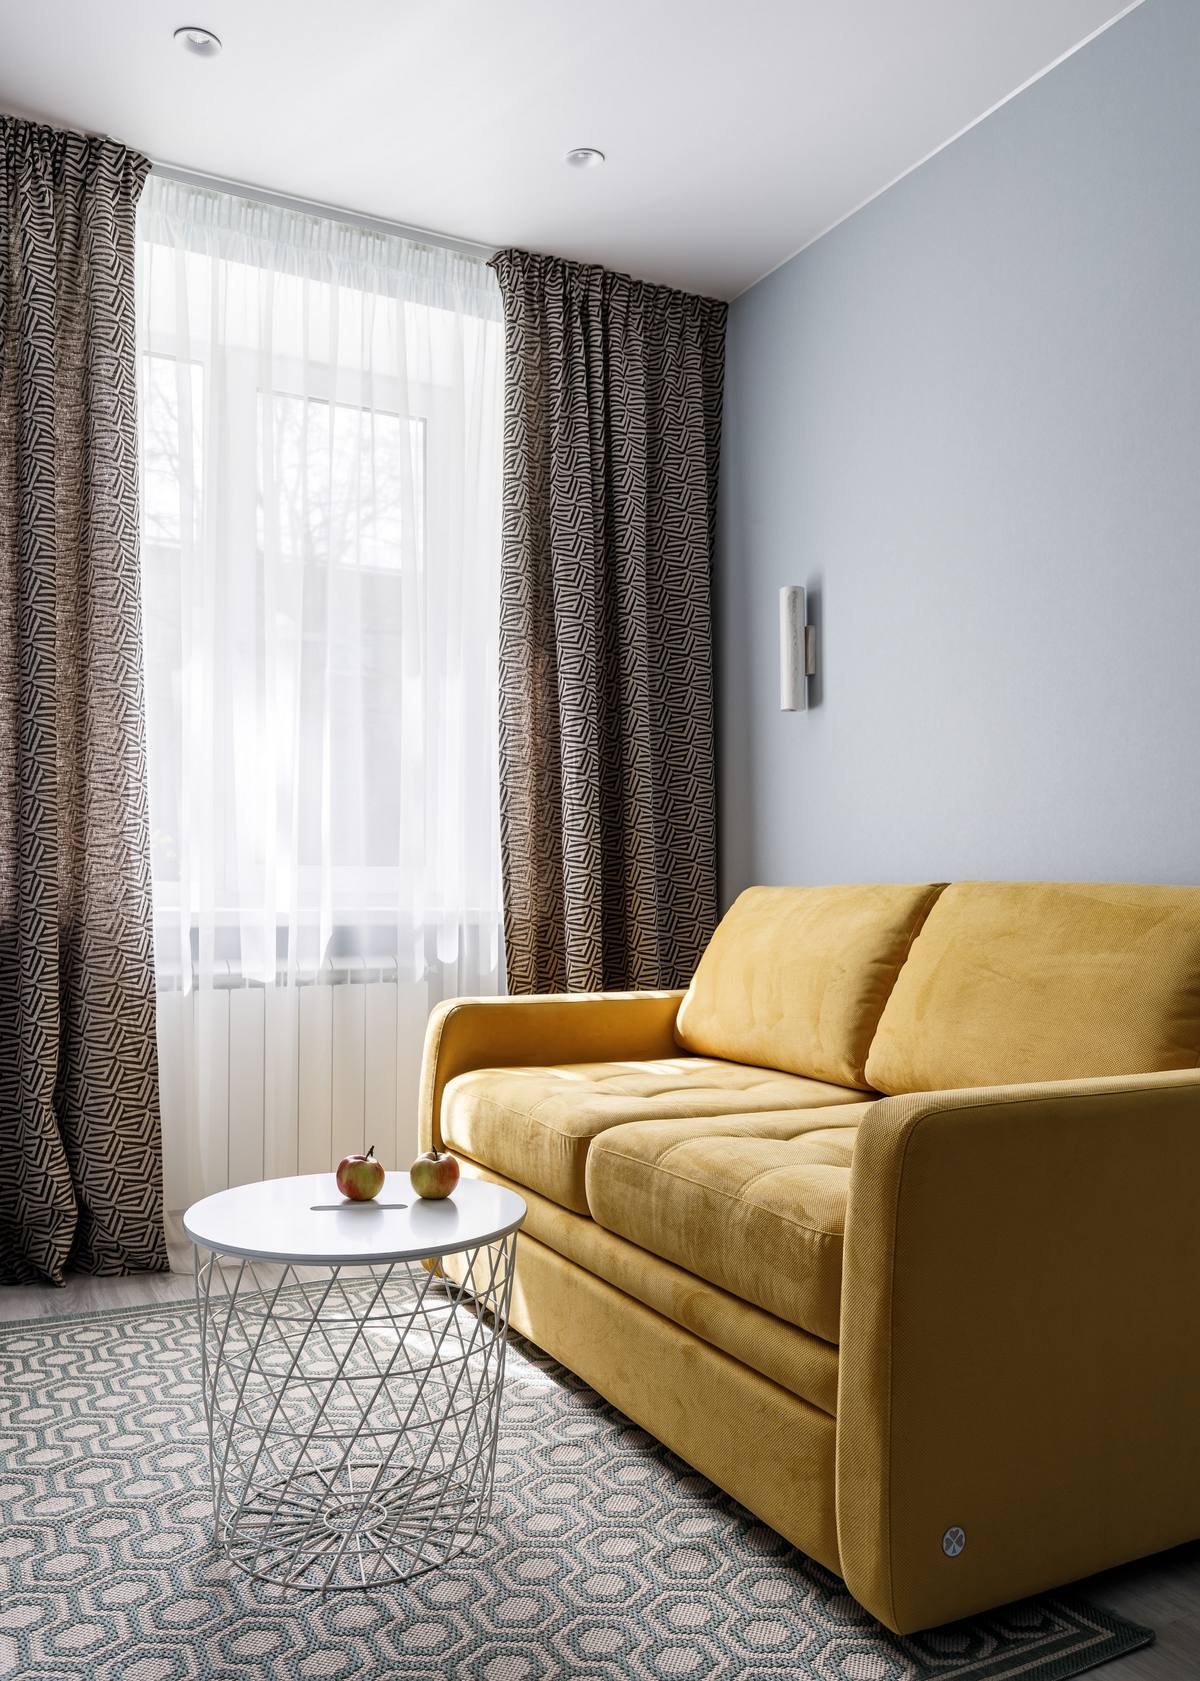 Chúng ta đã tham quan phòng khách chính với sofa màu xanh lam đậm nổi bật thì bây giờ sẽ là căn phòng phụ, kiêm nhiệm 1 lúc 2 vai trò: Vừa là phòng khách phụ vừa là phòng ngủ với chiếc sofa bed (sofa kết hợp giường ngủ) sắc vàng mù tạt tuyệt đẹp.